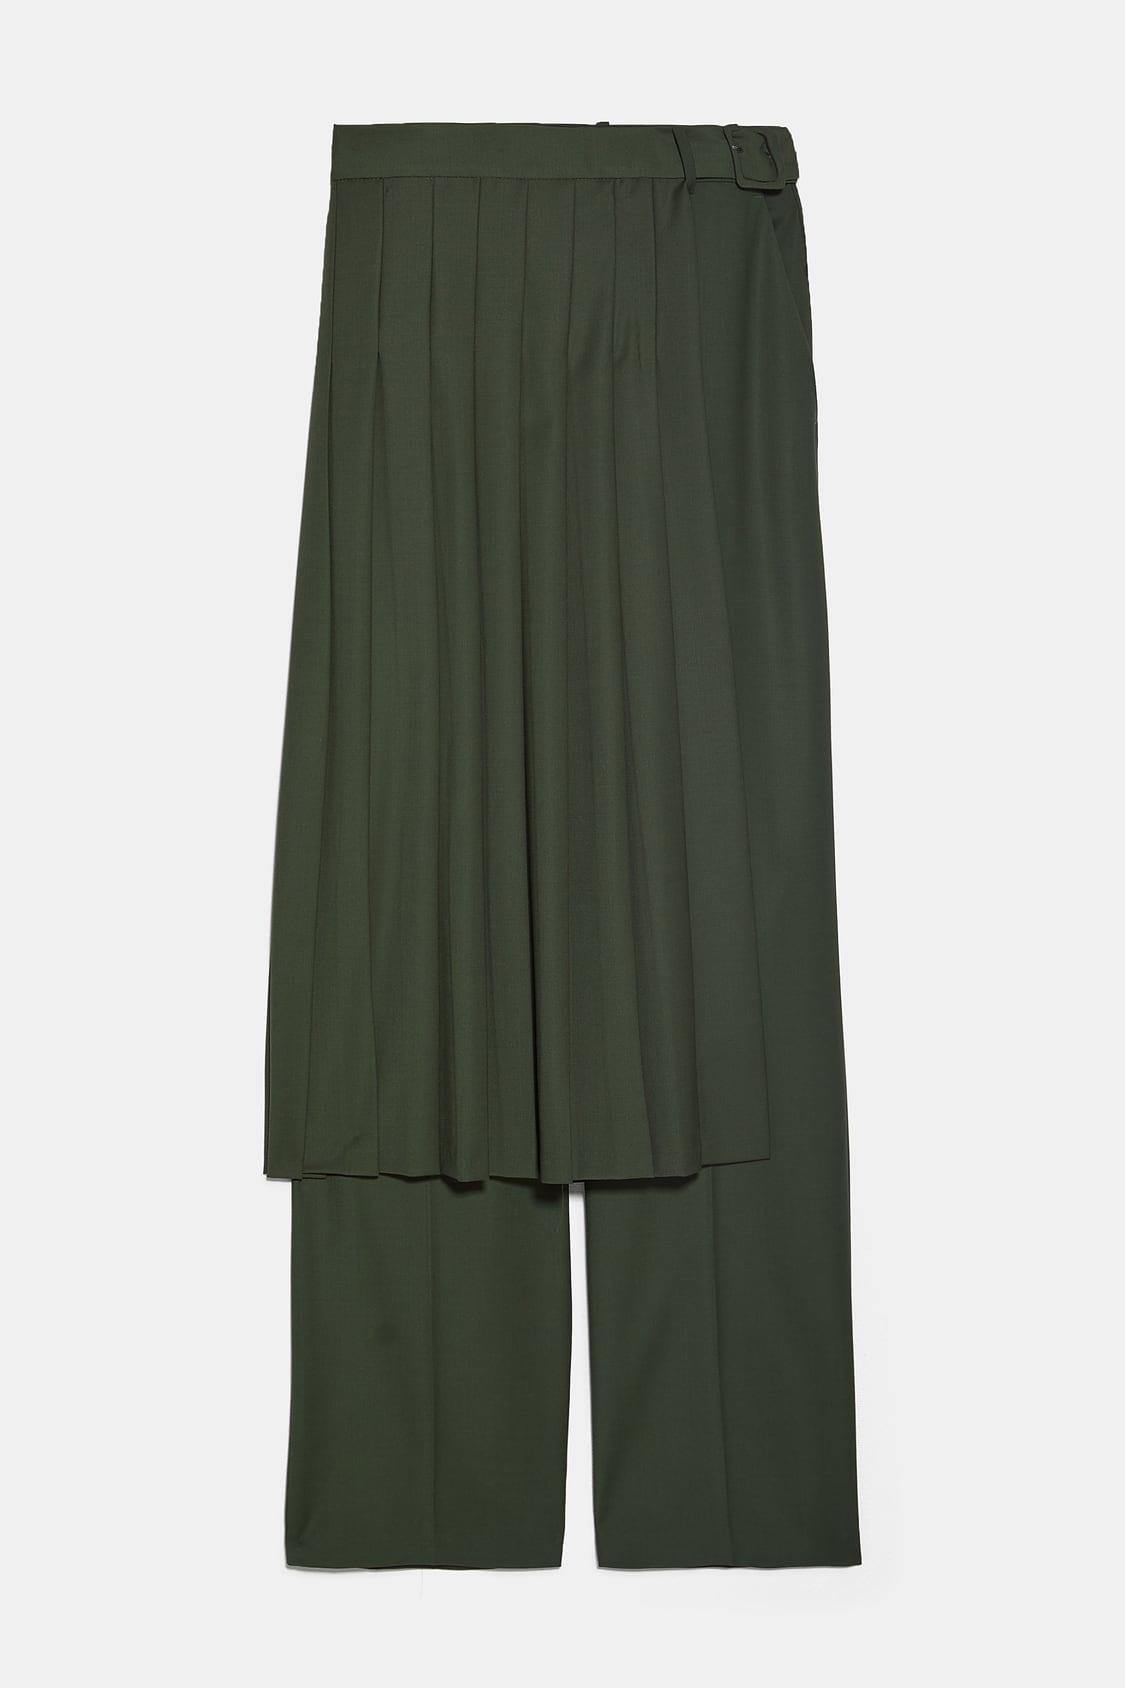 Pantalón y falda plisada en uno, Zara